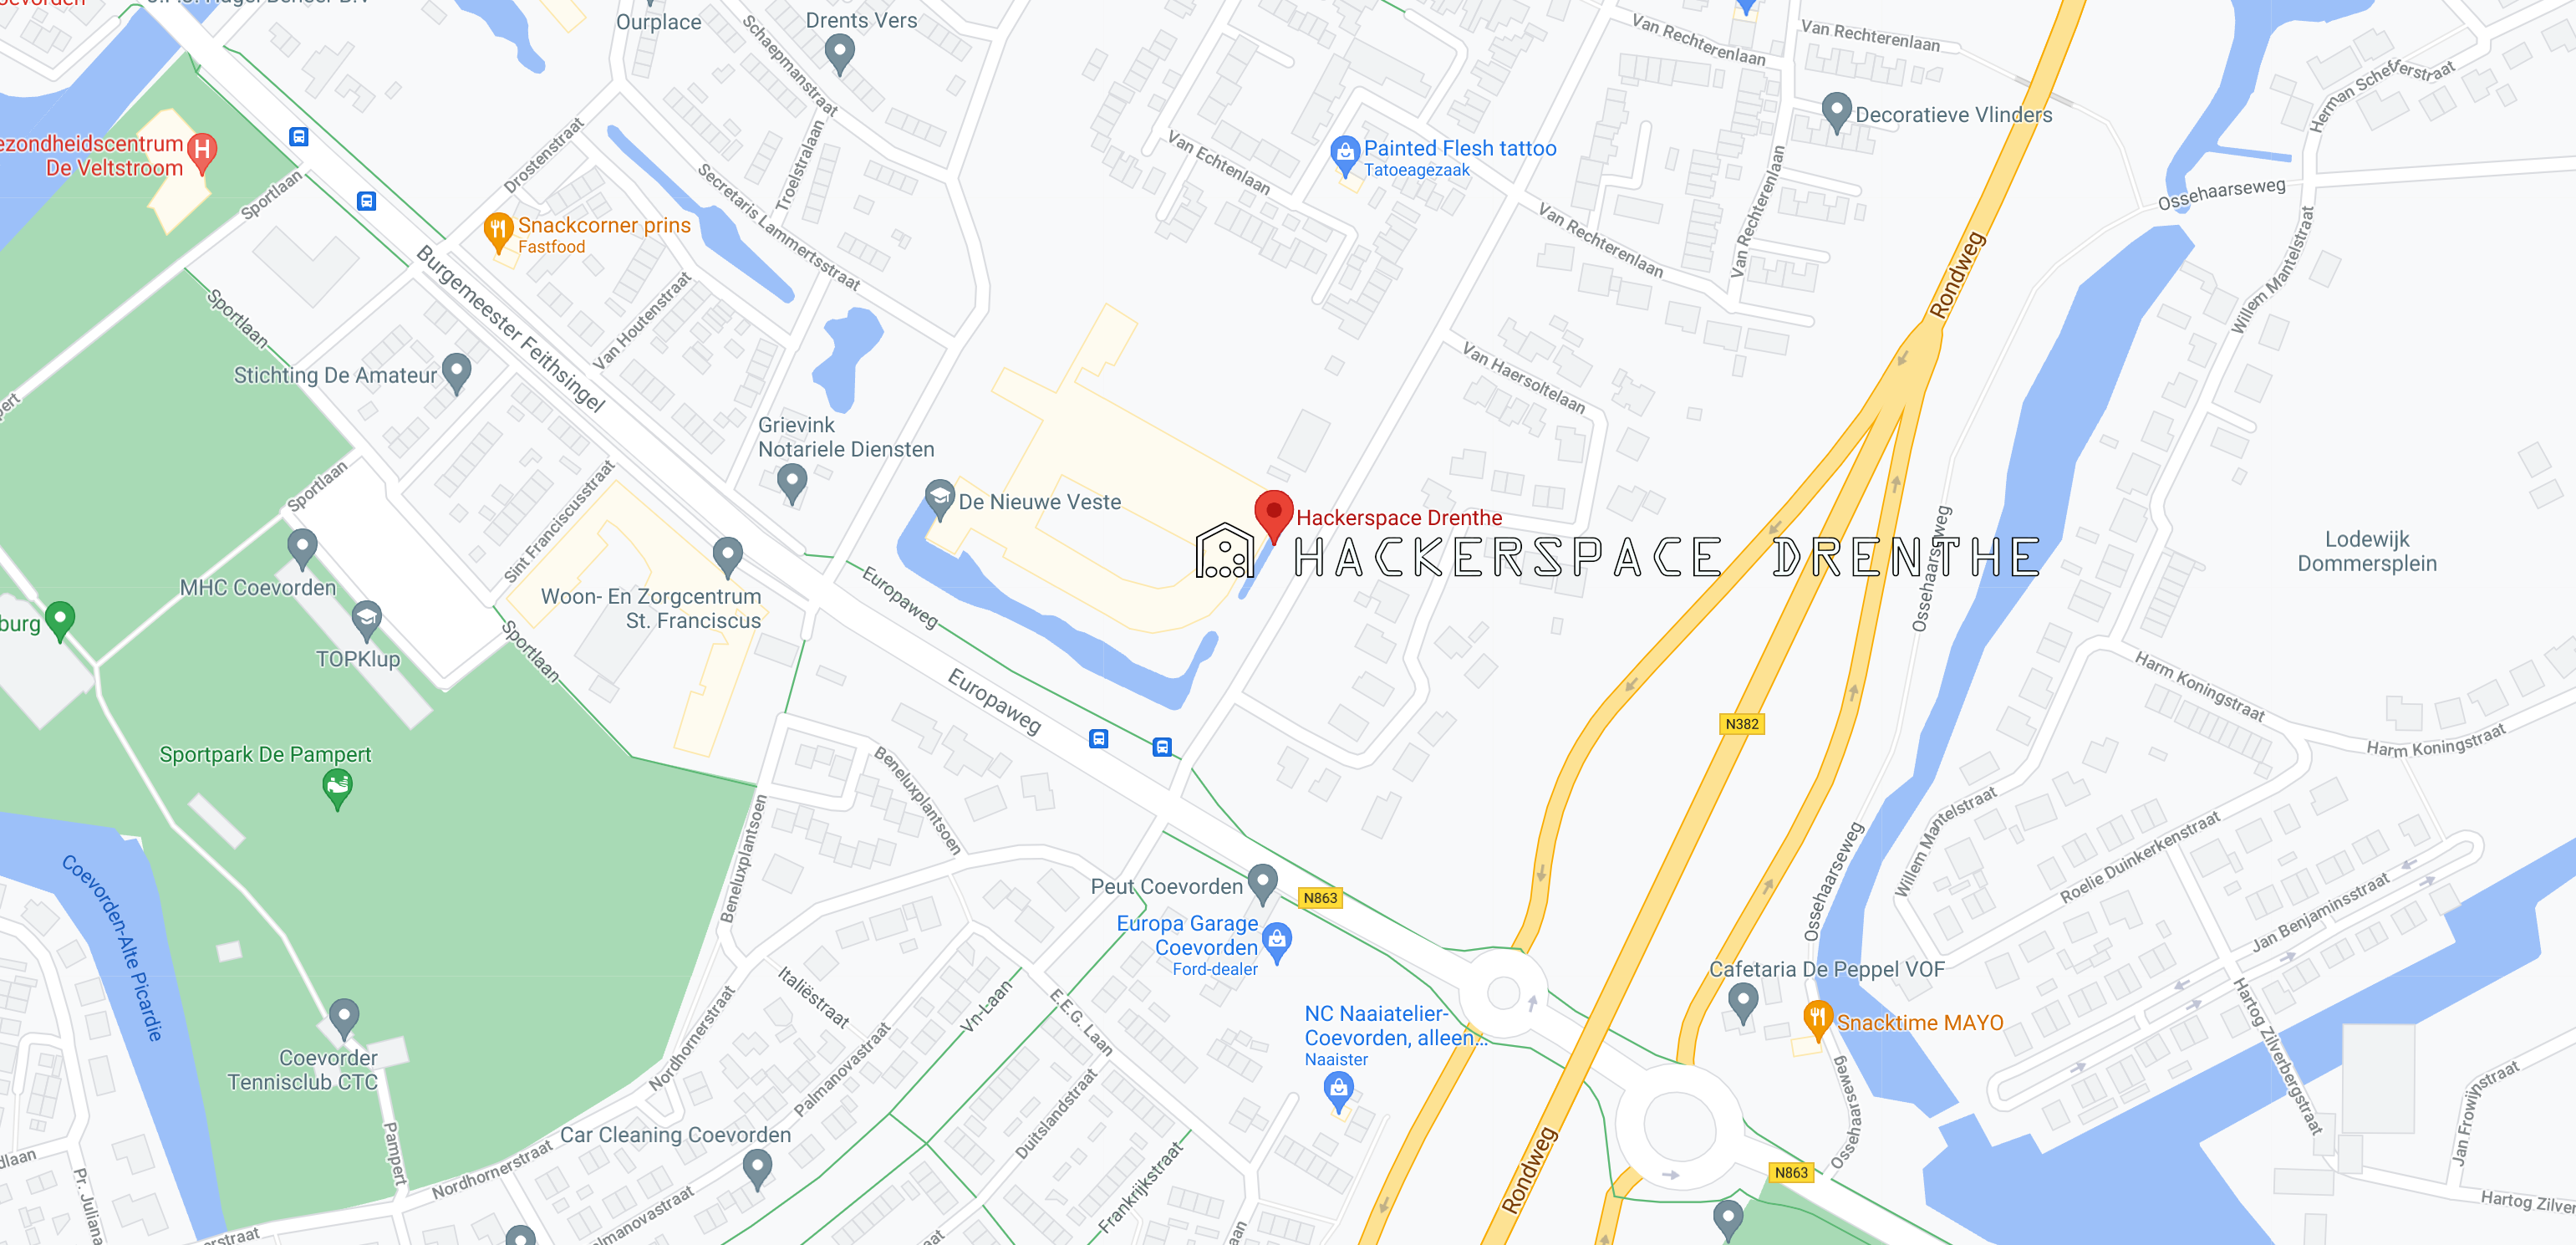 Locatie hackerspace.png